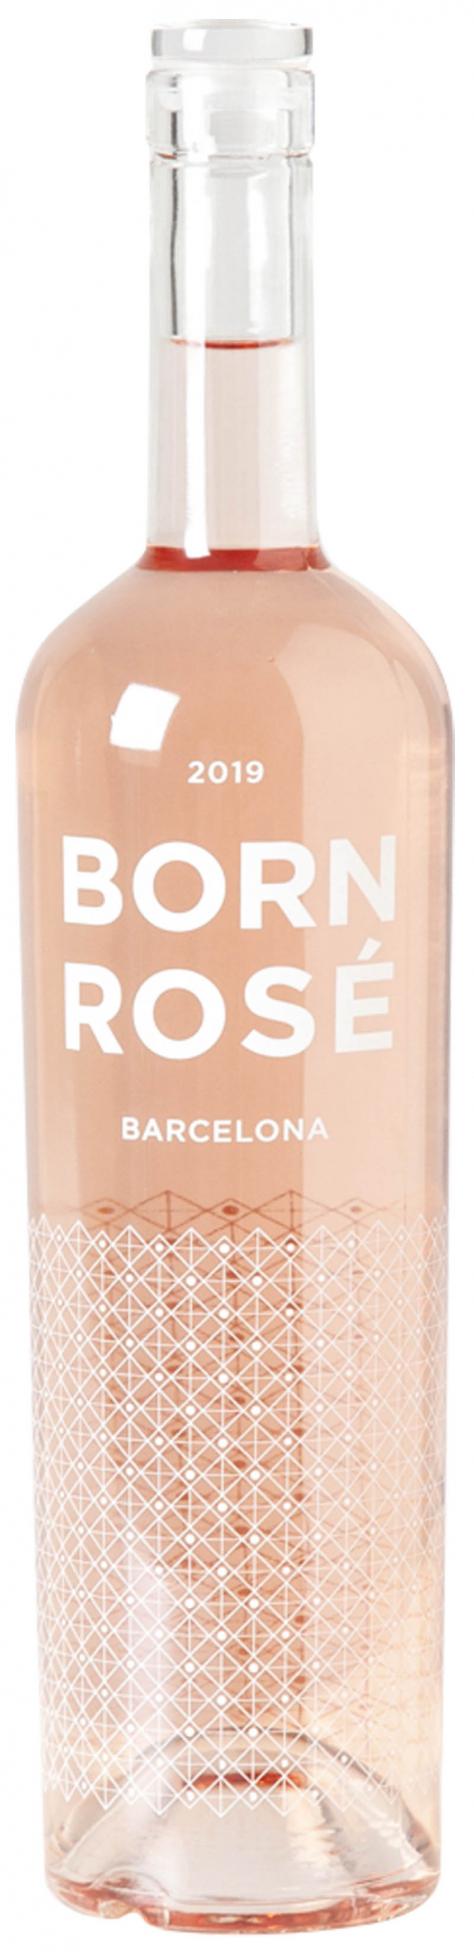 Born Rosé Barcelona